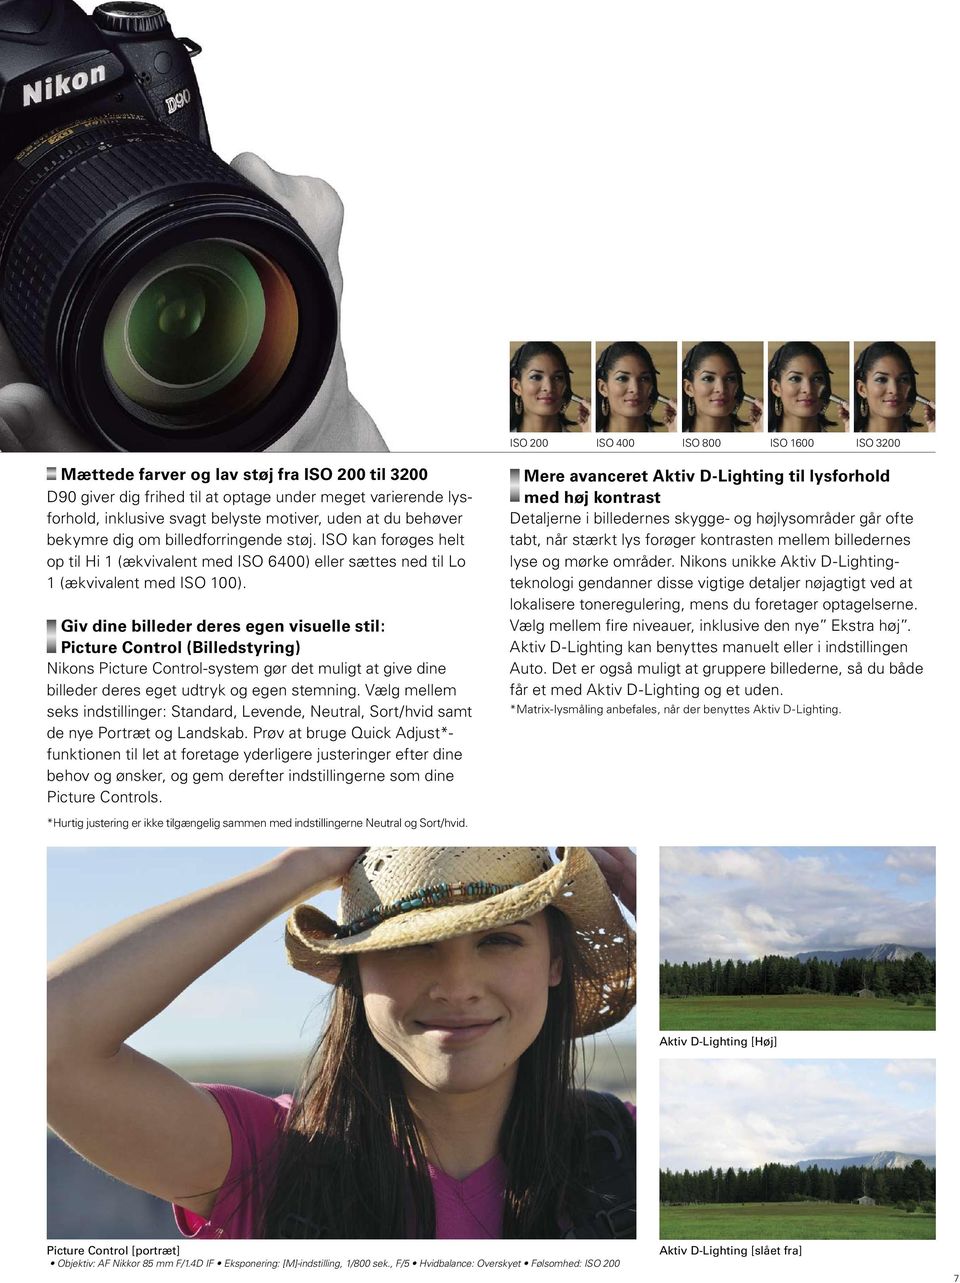 Giv dine billeder deres egen visuelle stil: Picture Control (Billedstyring) Nikons Picture Control-system gør det muligt at give dine billeder deres eget udtryk og egen stemning.